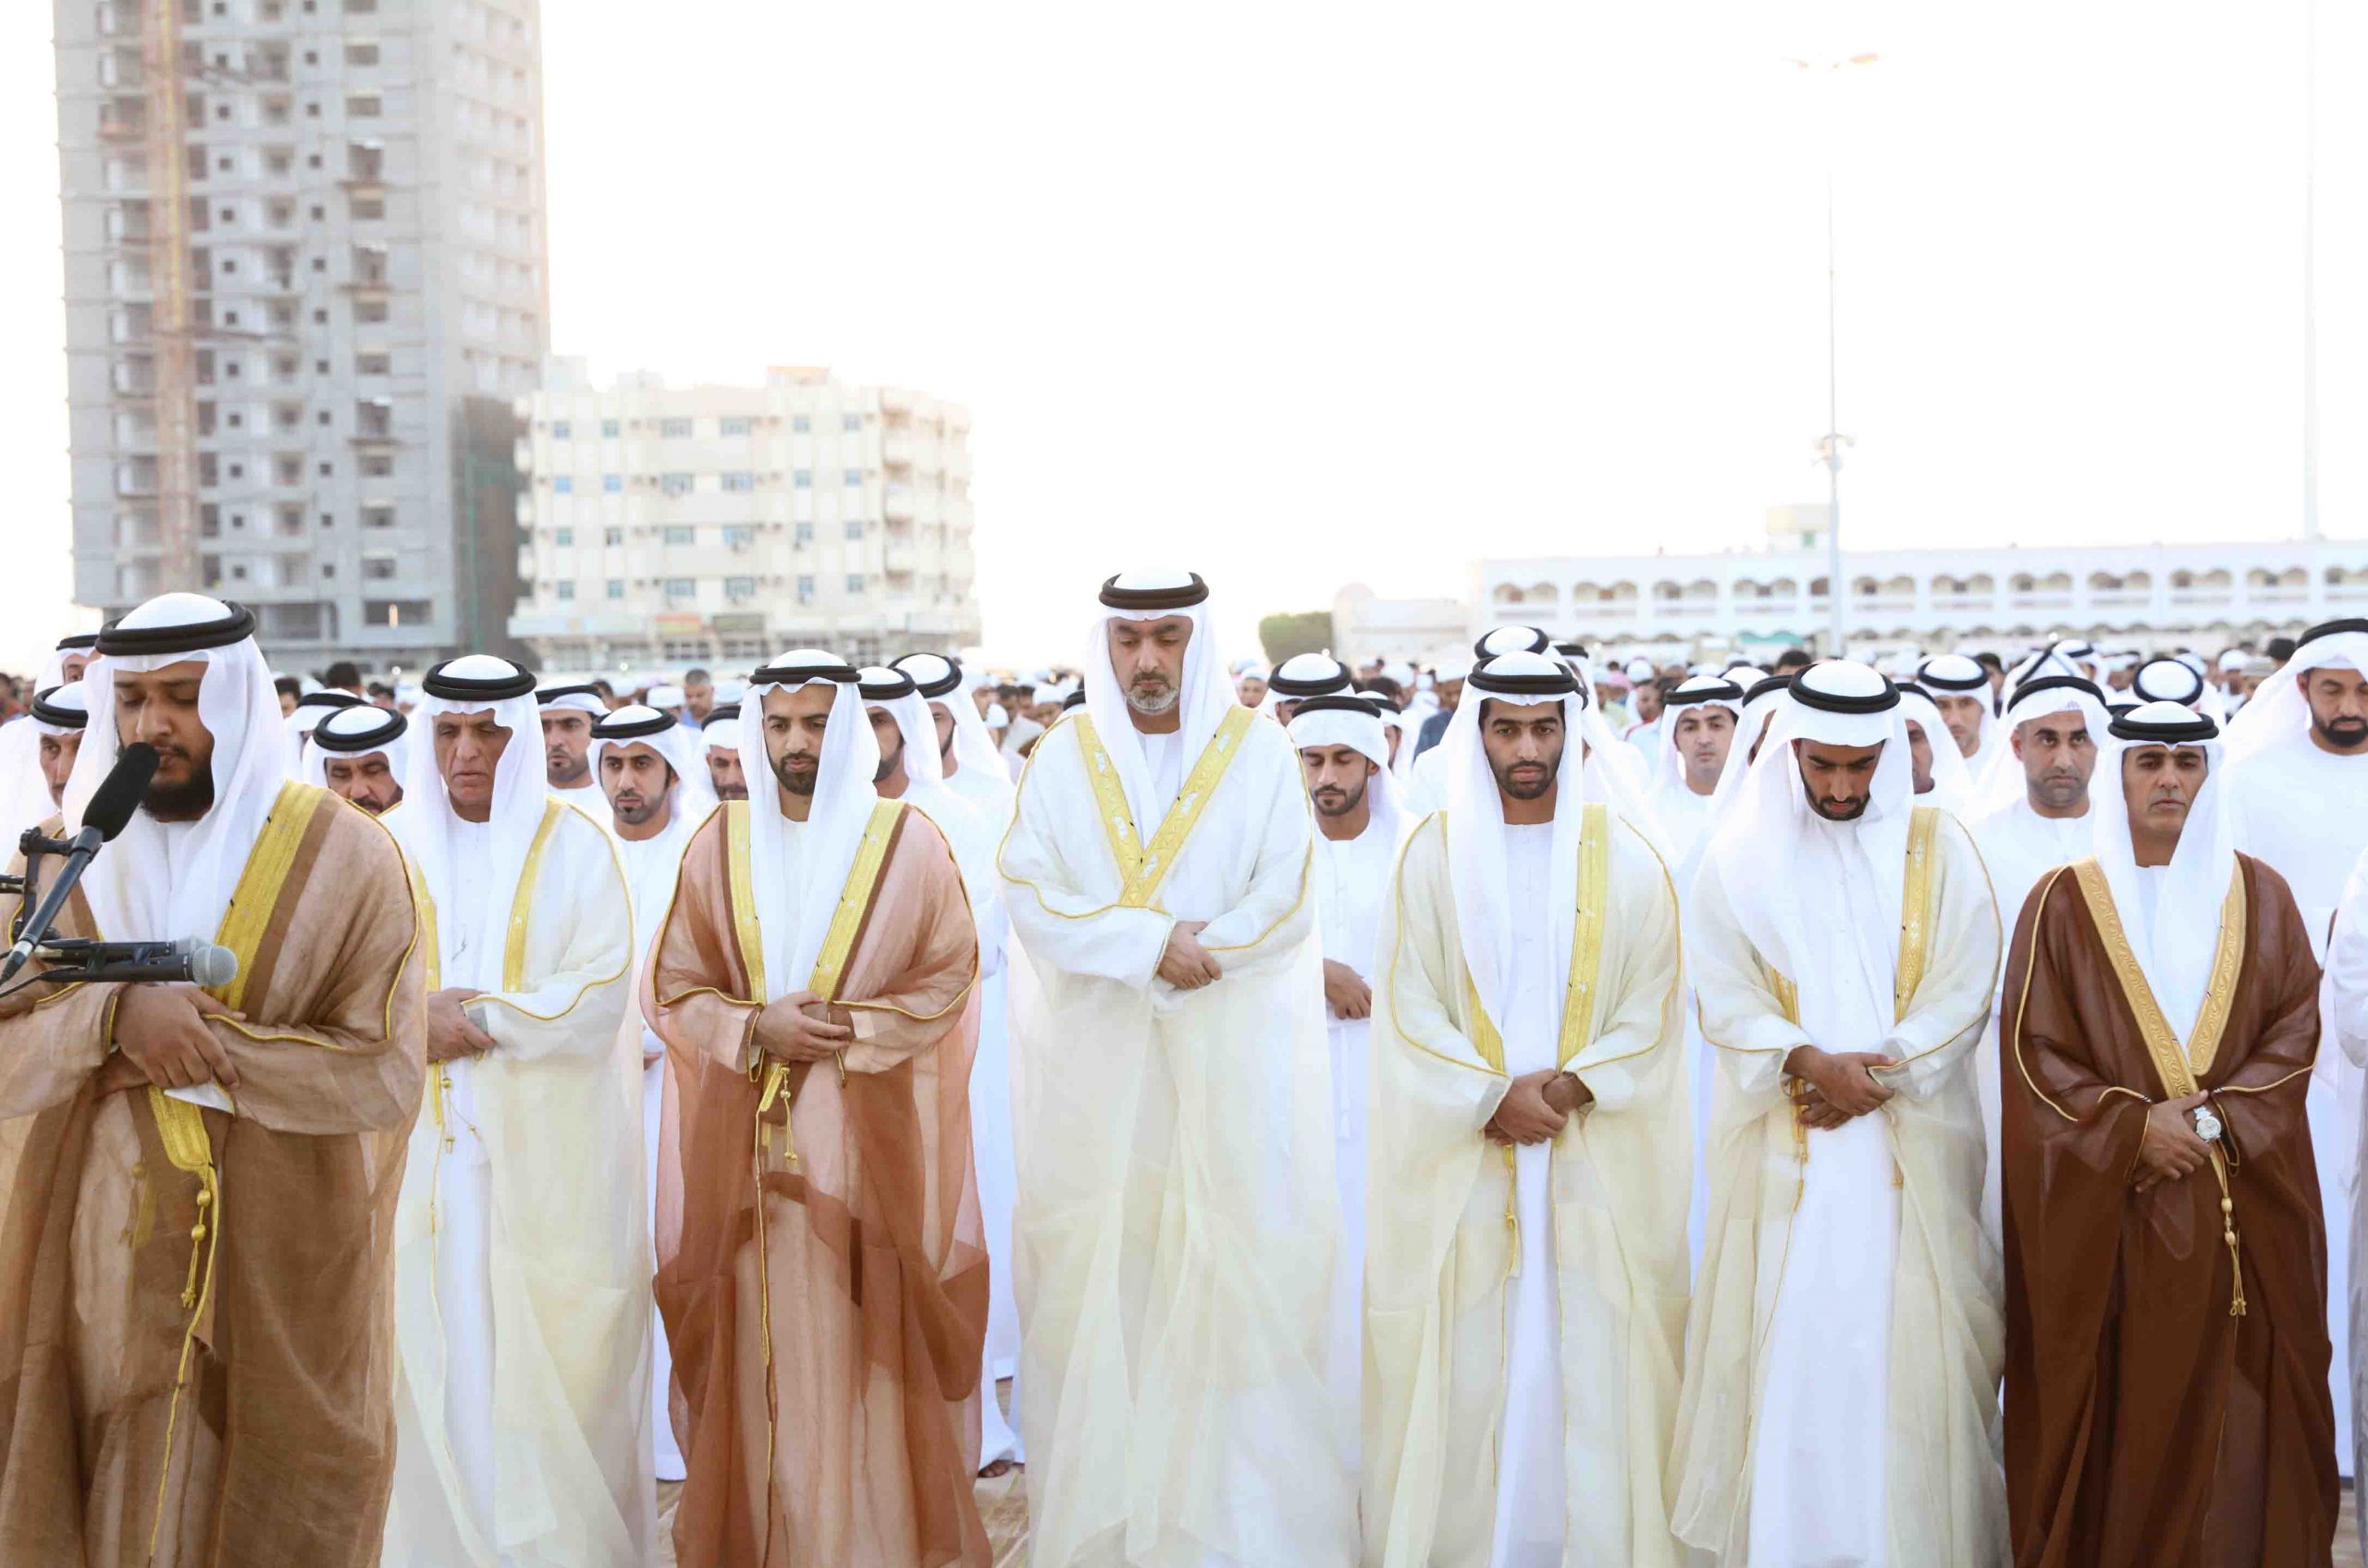 موعد صلاة عيد الفطر 2022 في الامارات || توقيت صلاة العيد في دبي و أبو ظبي 2022 - 1443 والمساجد التي تقام فيها صلاة عيد الفطر في الامارات